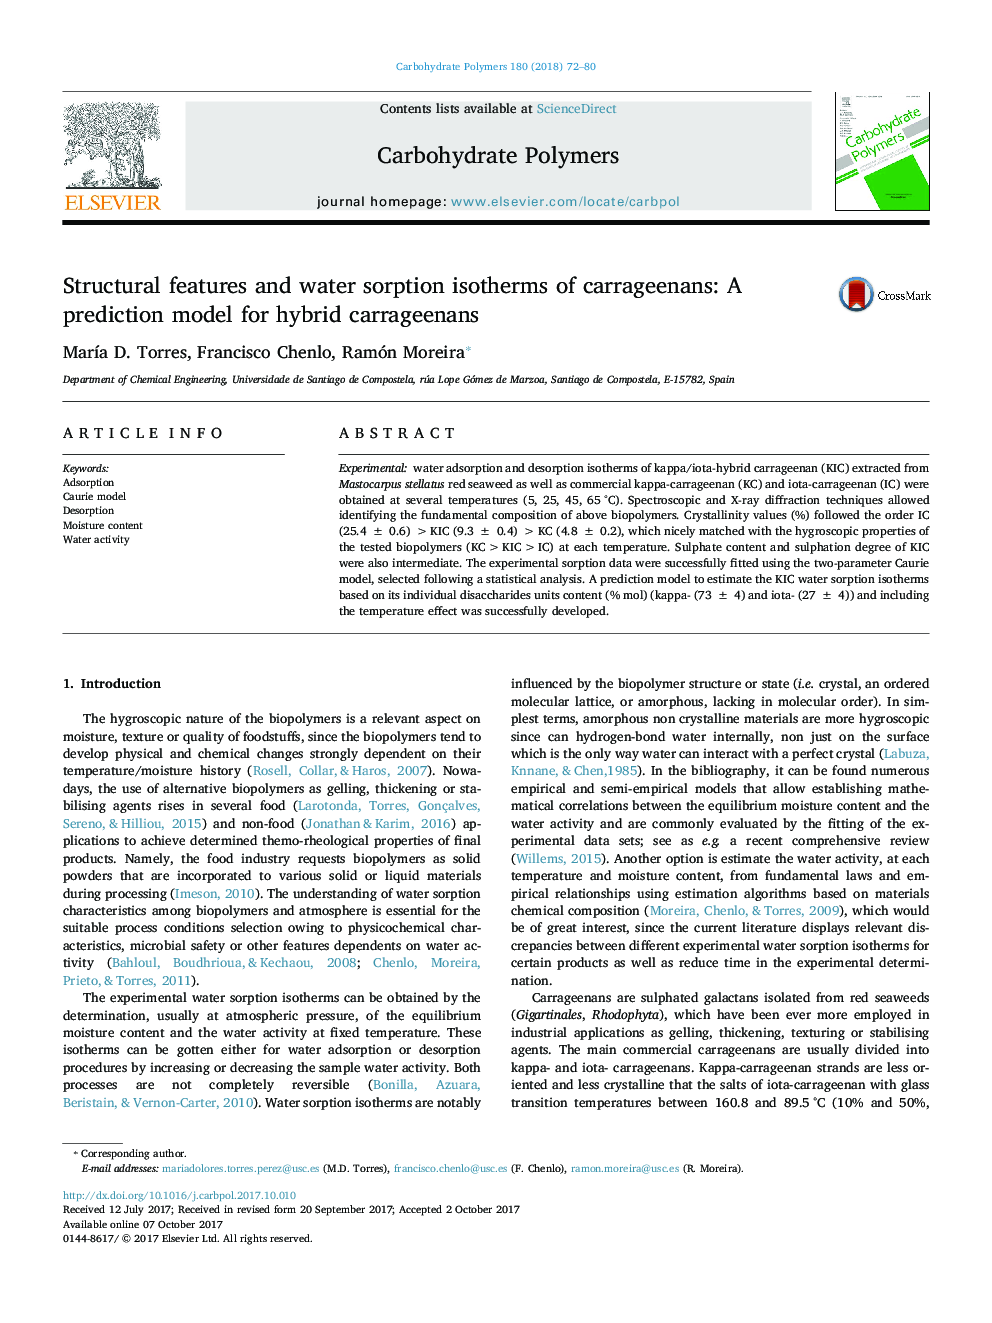 ویژگی های ساختاری و ایزوترم جذب آب کاراژیان ها: یک مدل پیش بینی برای کاراژین های هیبرید